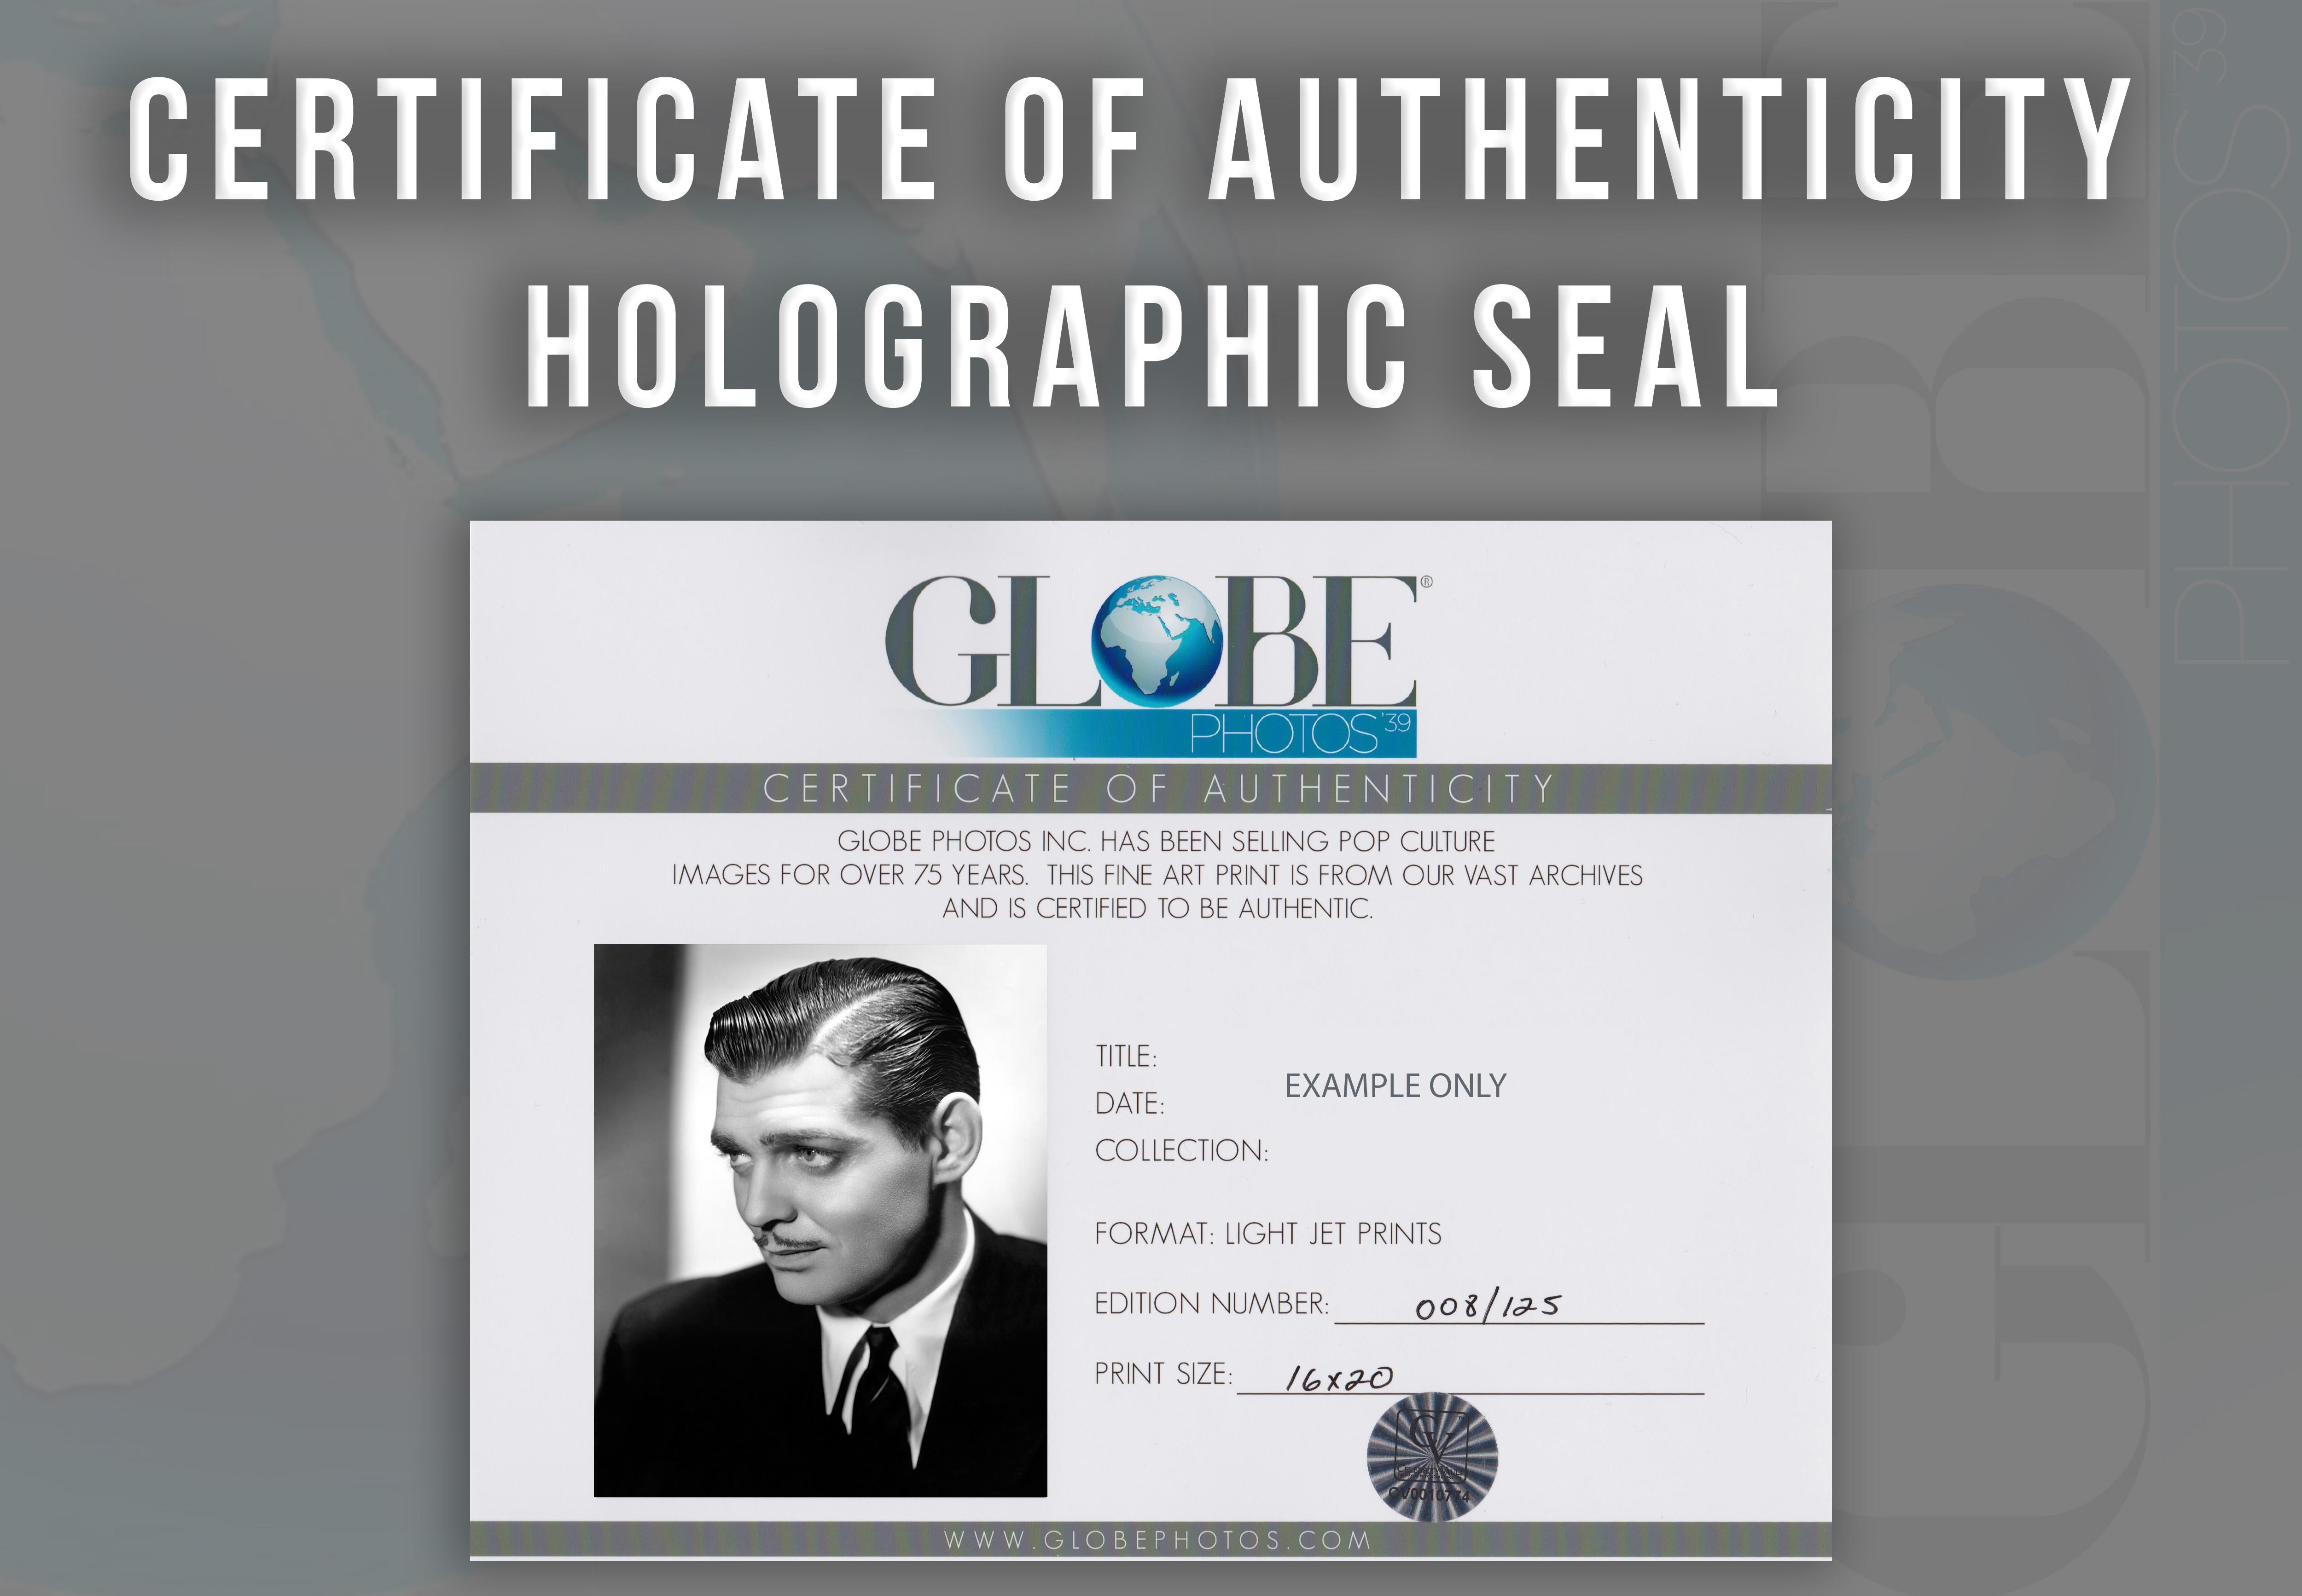 Dieses klassische Schwarz-Weiß-Porträt zeigt Clark Gable im Profil.

Clark Gable war ein amerikanischer Filmschauspieler und Militäroffizier, der oft als 